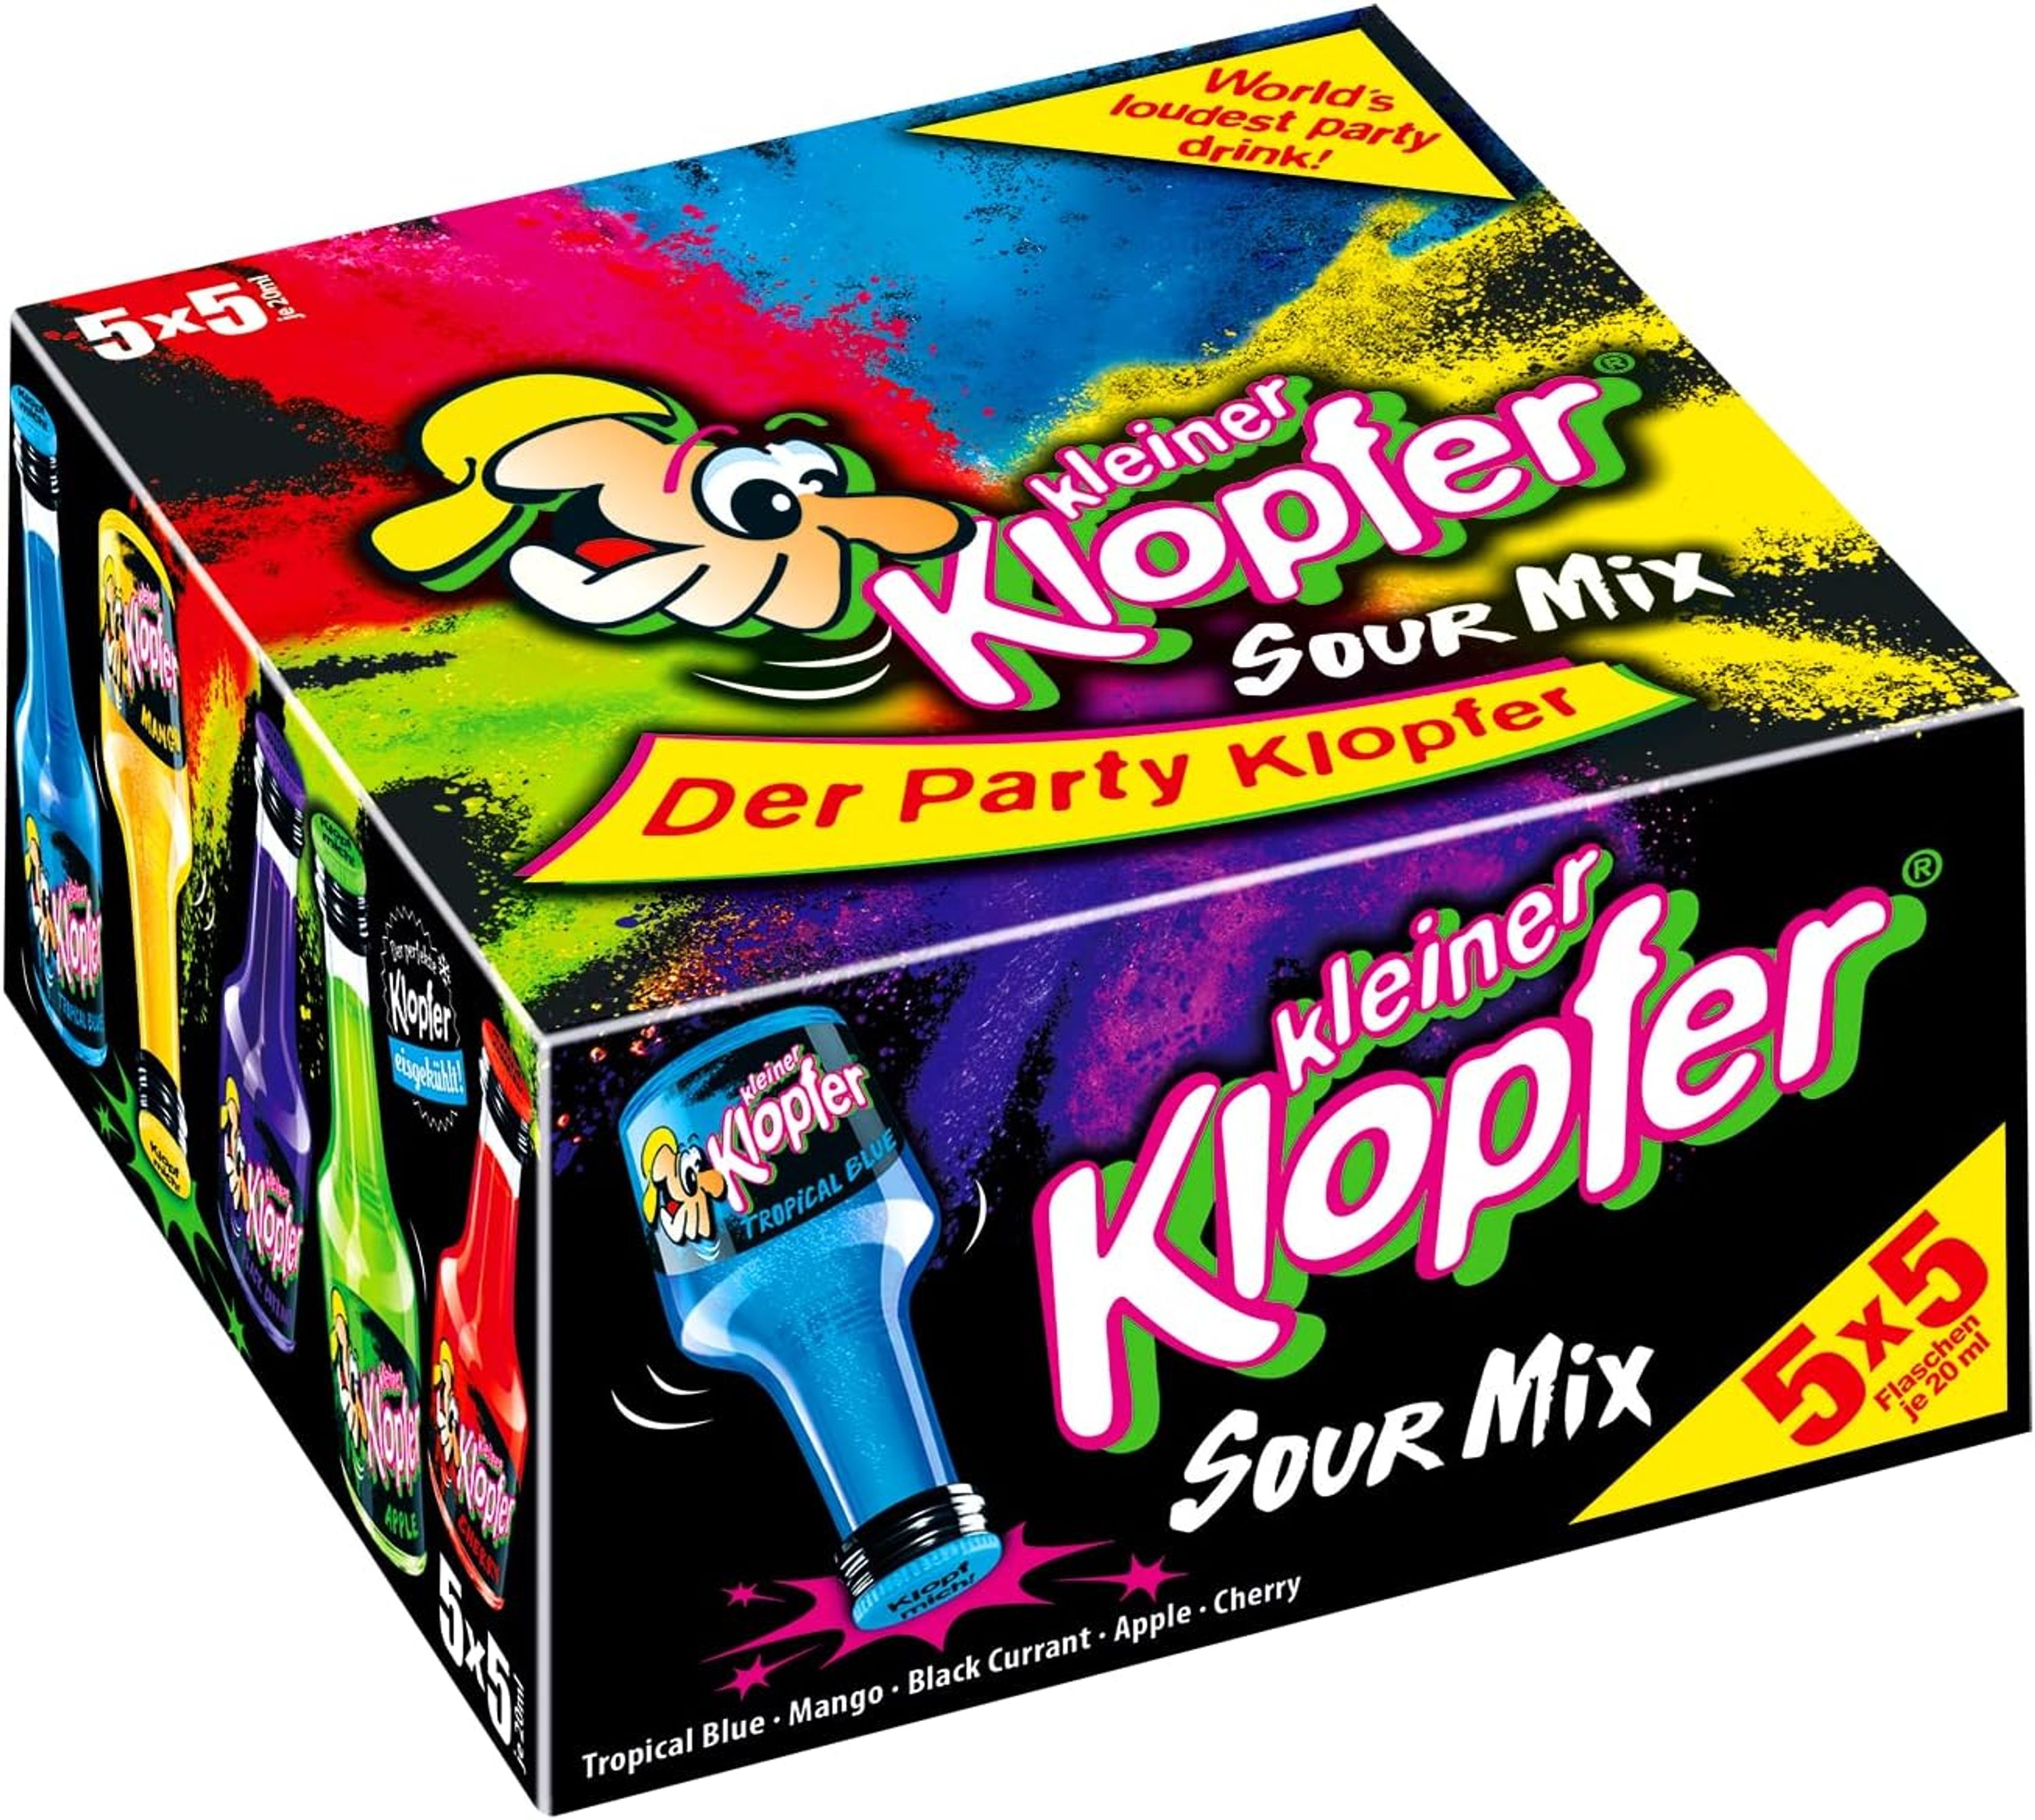 Kleiner Klopfer Sour Mix 25x20ml, 0.5l, alc. 15% vol., liqueur mix Germany 